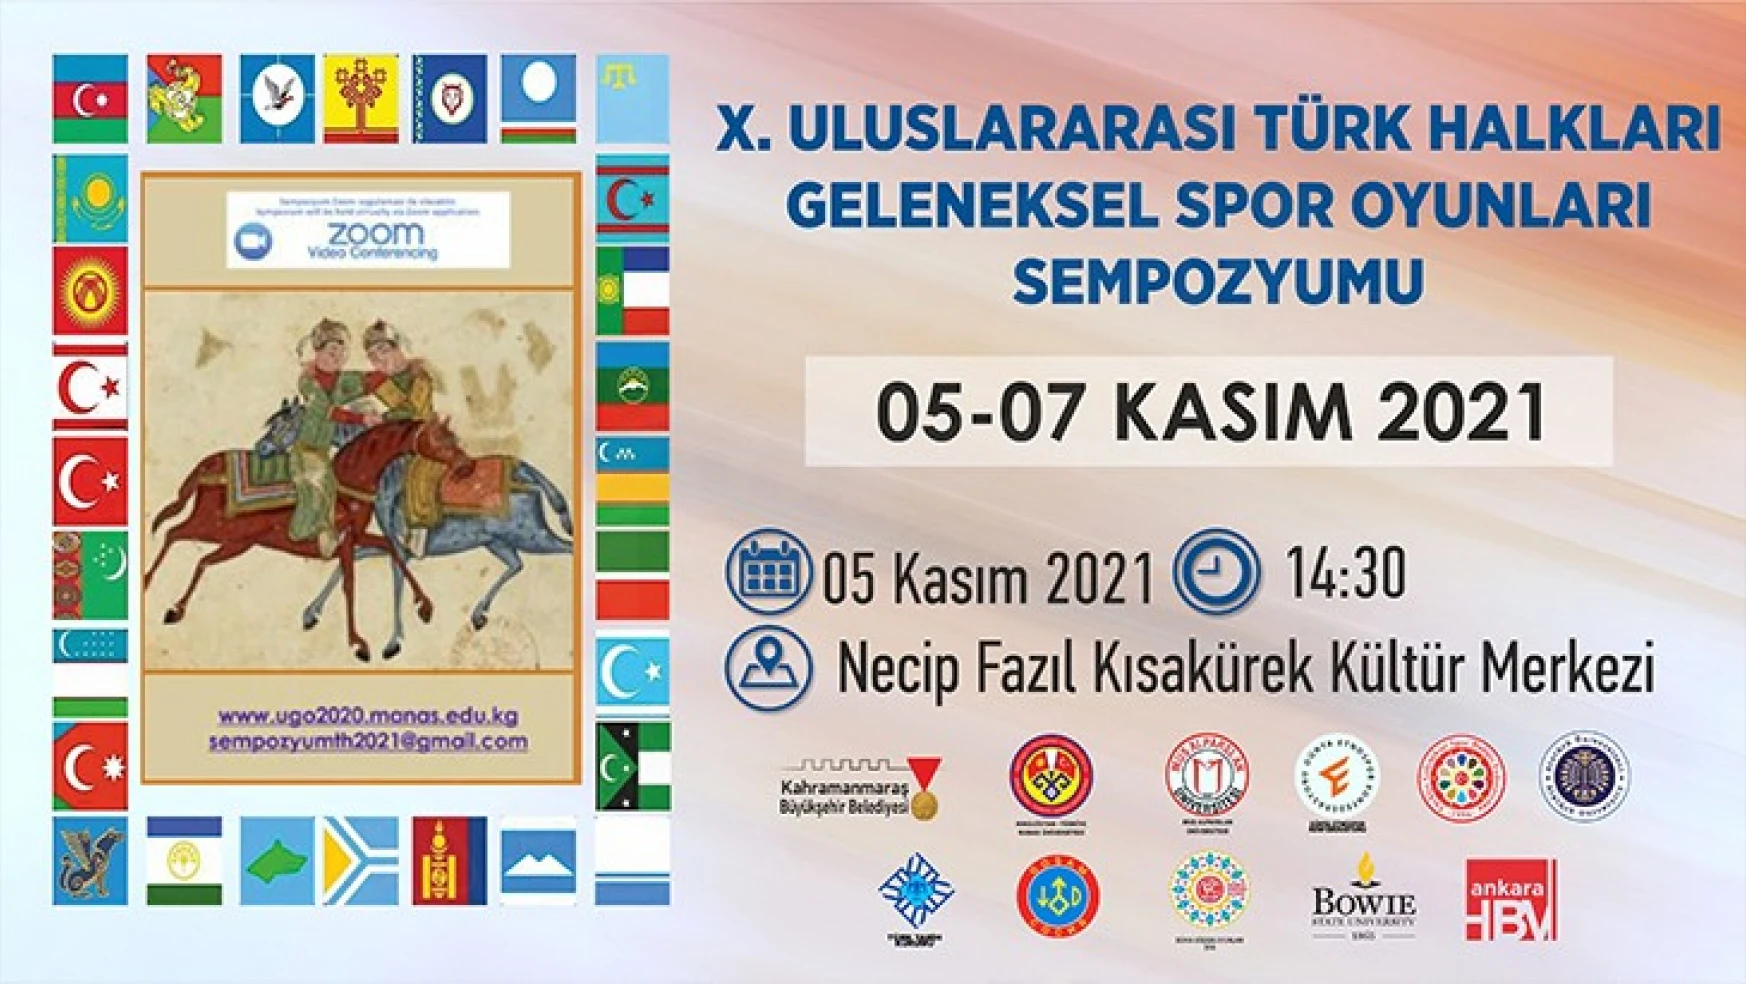 10'uncu Uluslararası Türk Halkları Geleneksel Spor Oyunları sempozyumu başlıyor